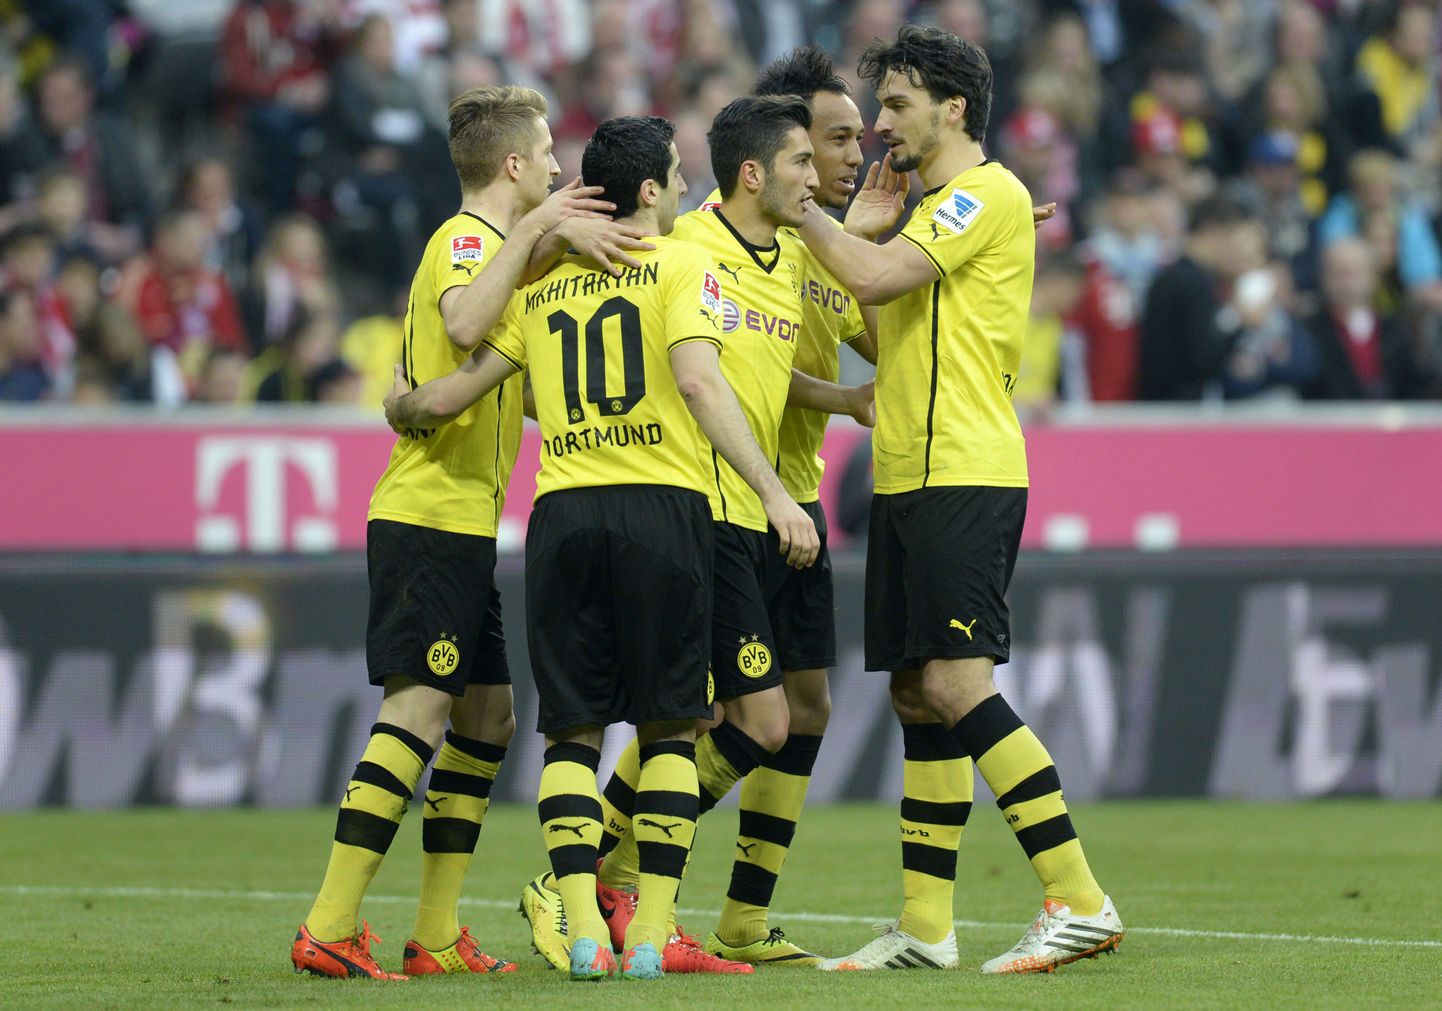 Dortmundi Borussia mängijad rõõmustamas värava üle.